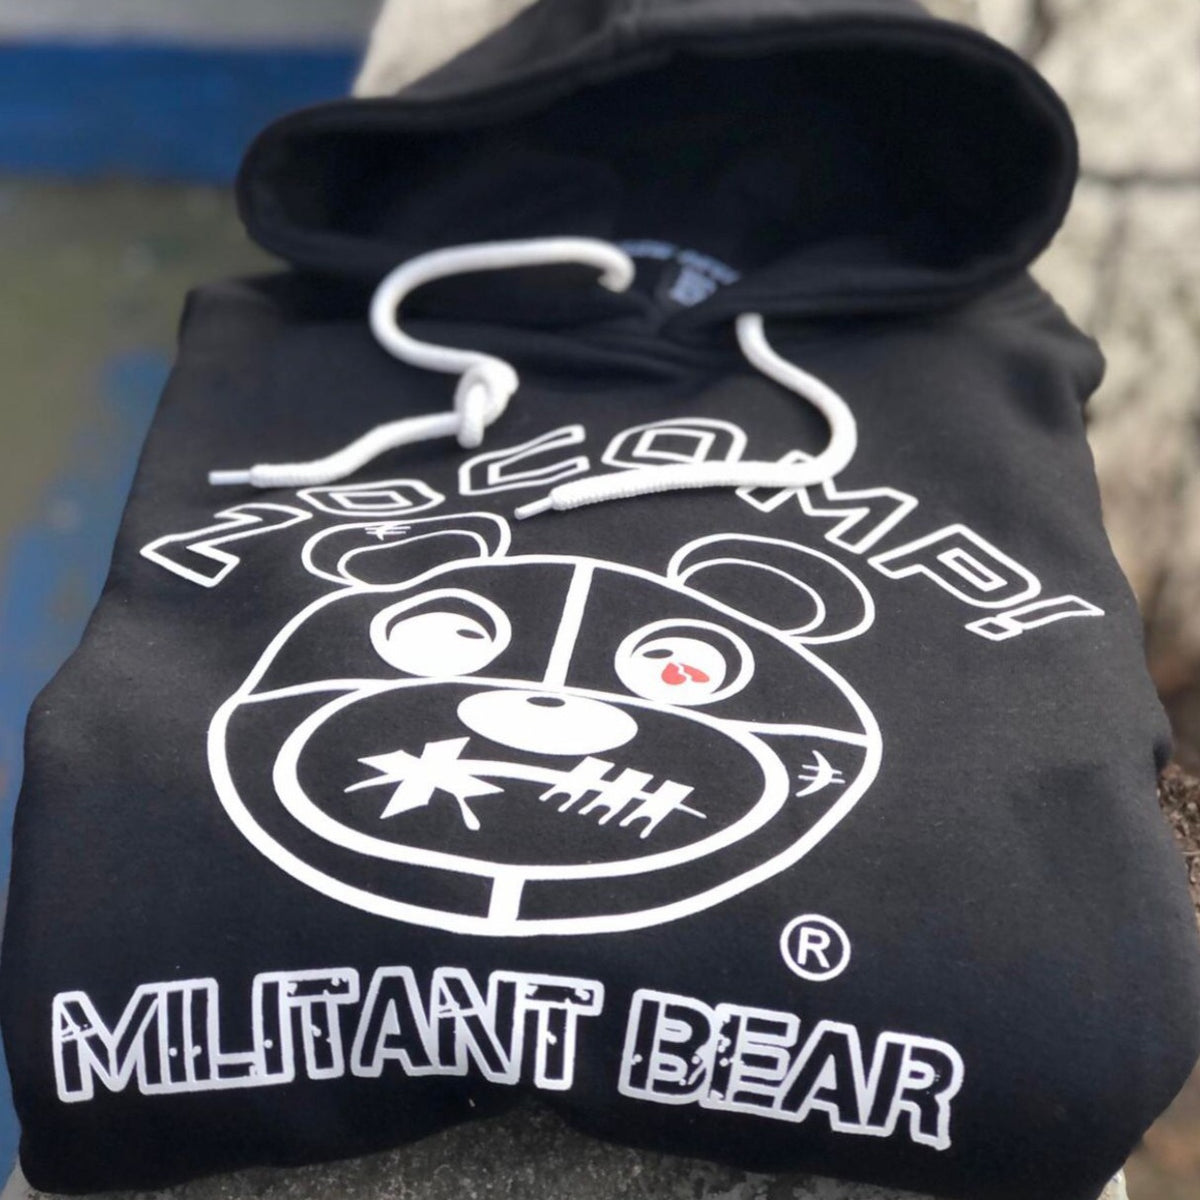 NoComp! "Militant BEAR" Men's Black Hoodie